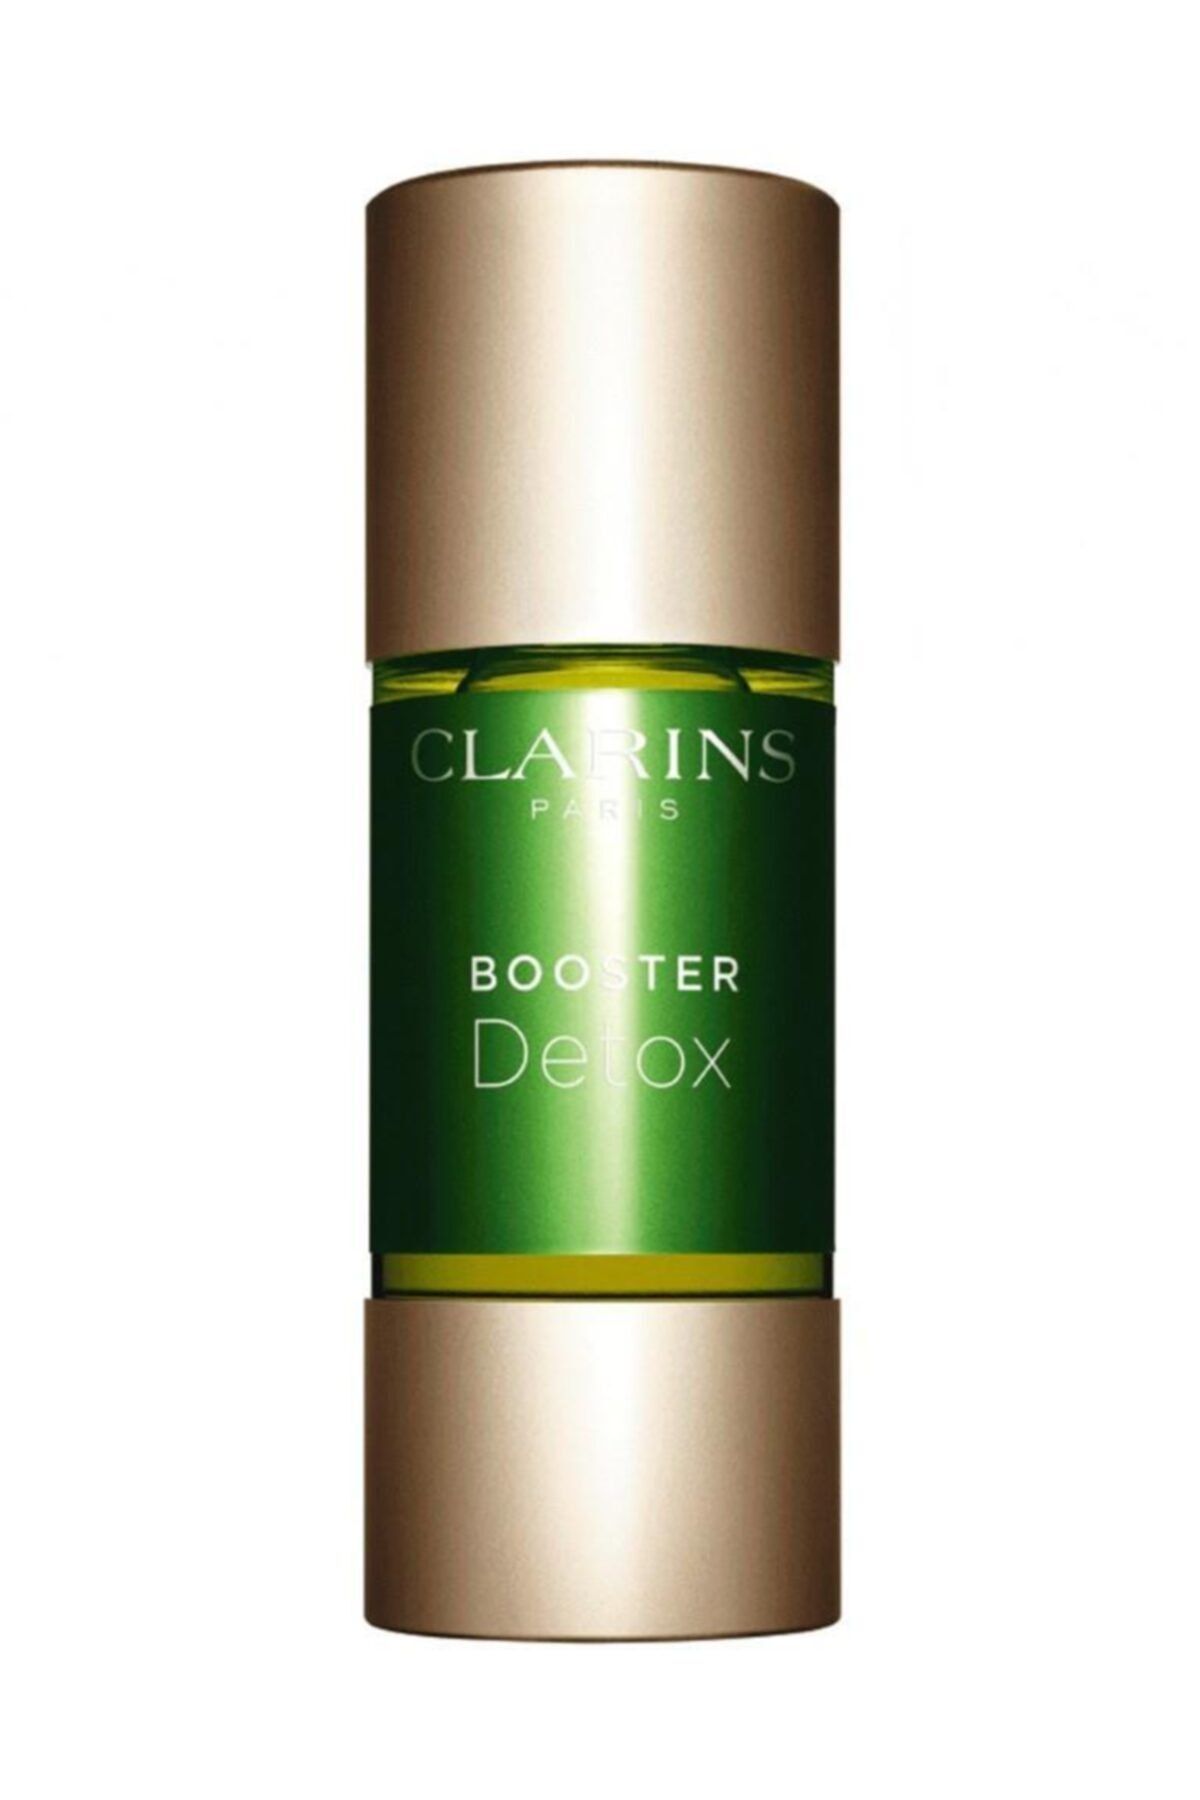 Clarins Tüm Ciltler Için Bakım Serumu - Detox Booster 15 Ml 3380810091977